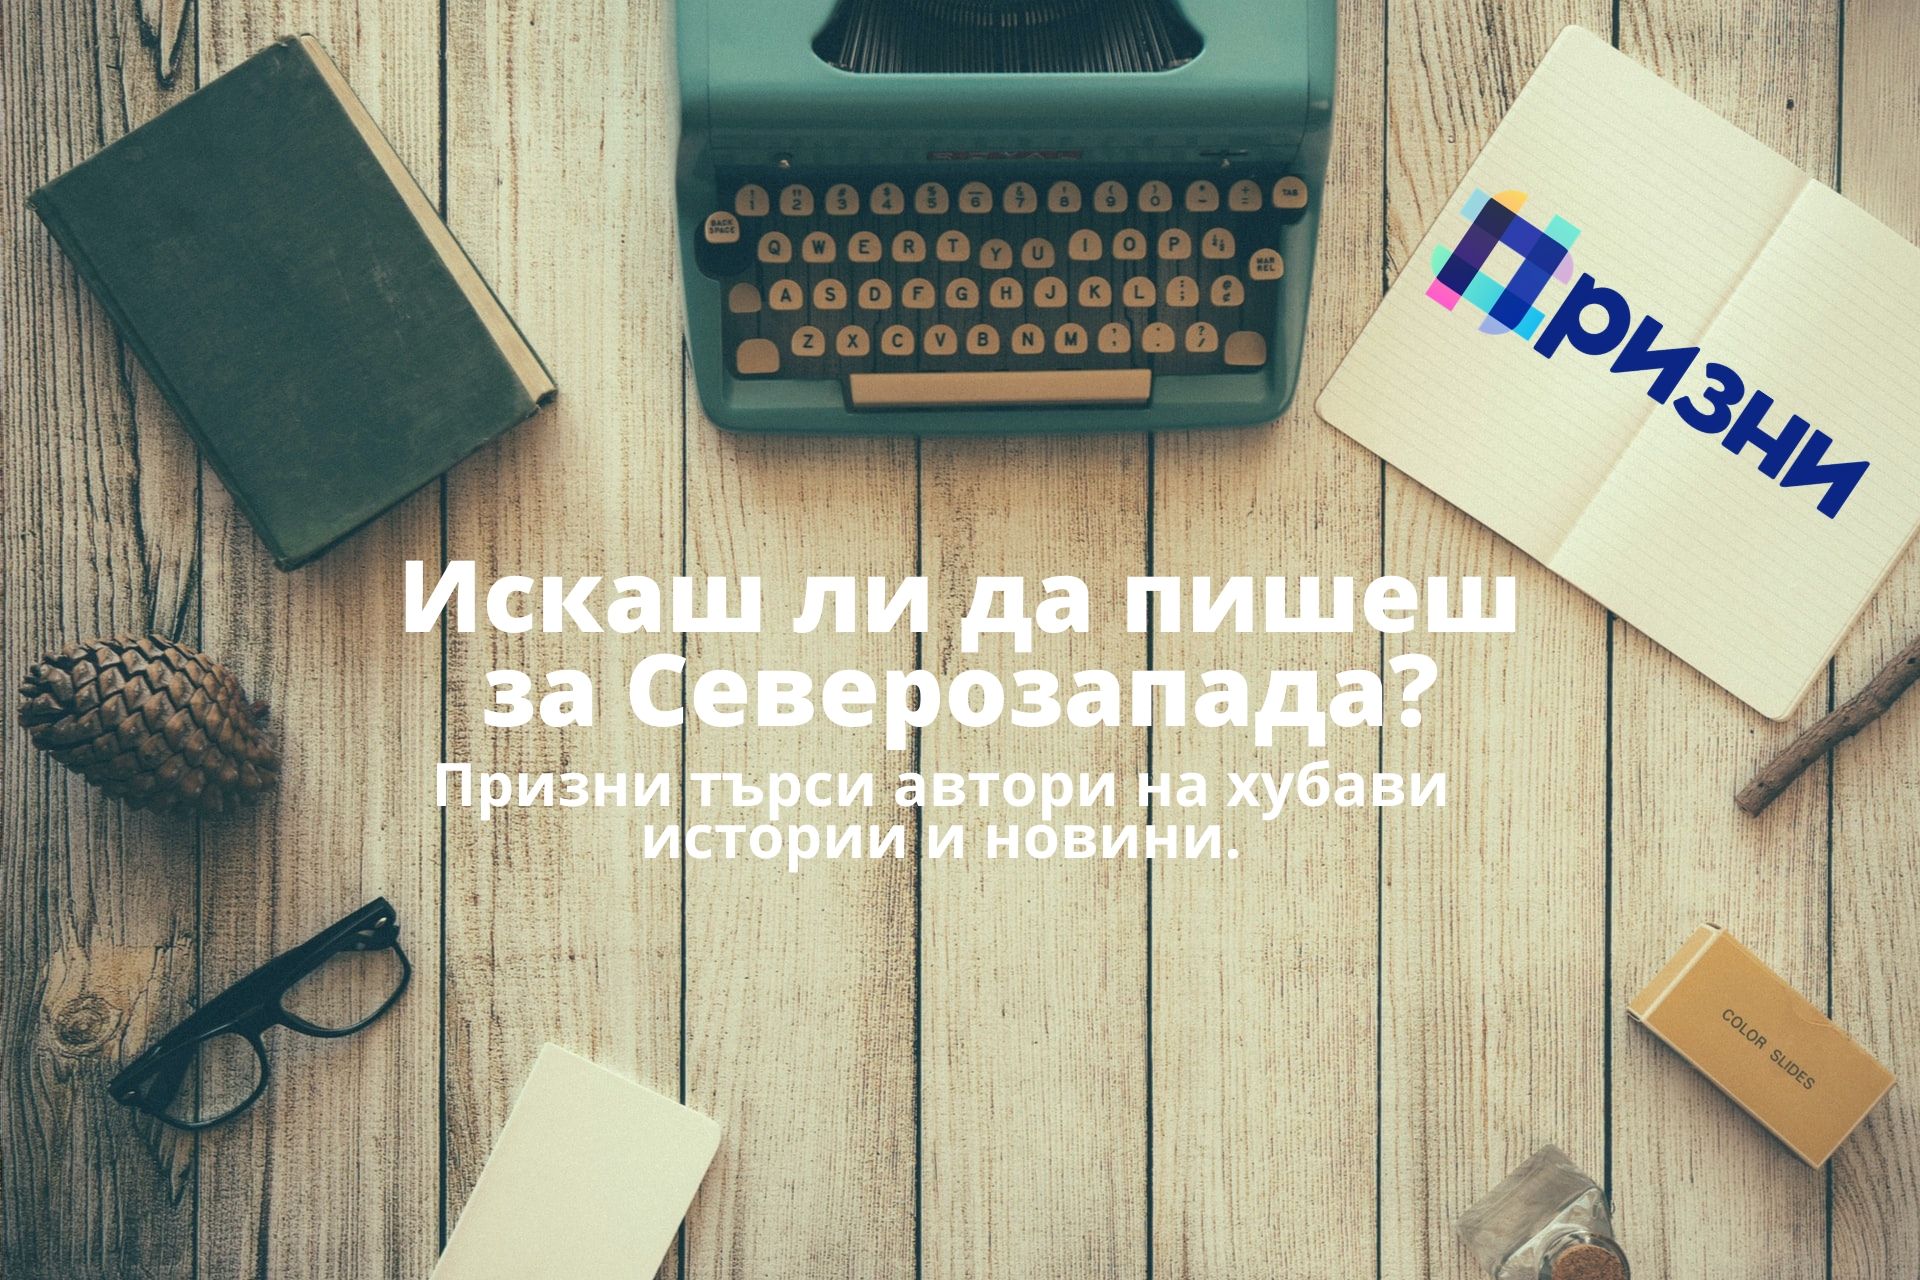 Prizni.bg търси нови автори от Северозапада